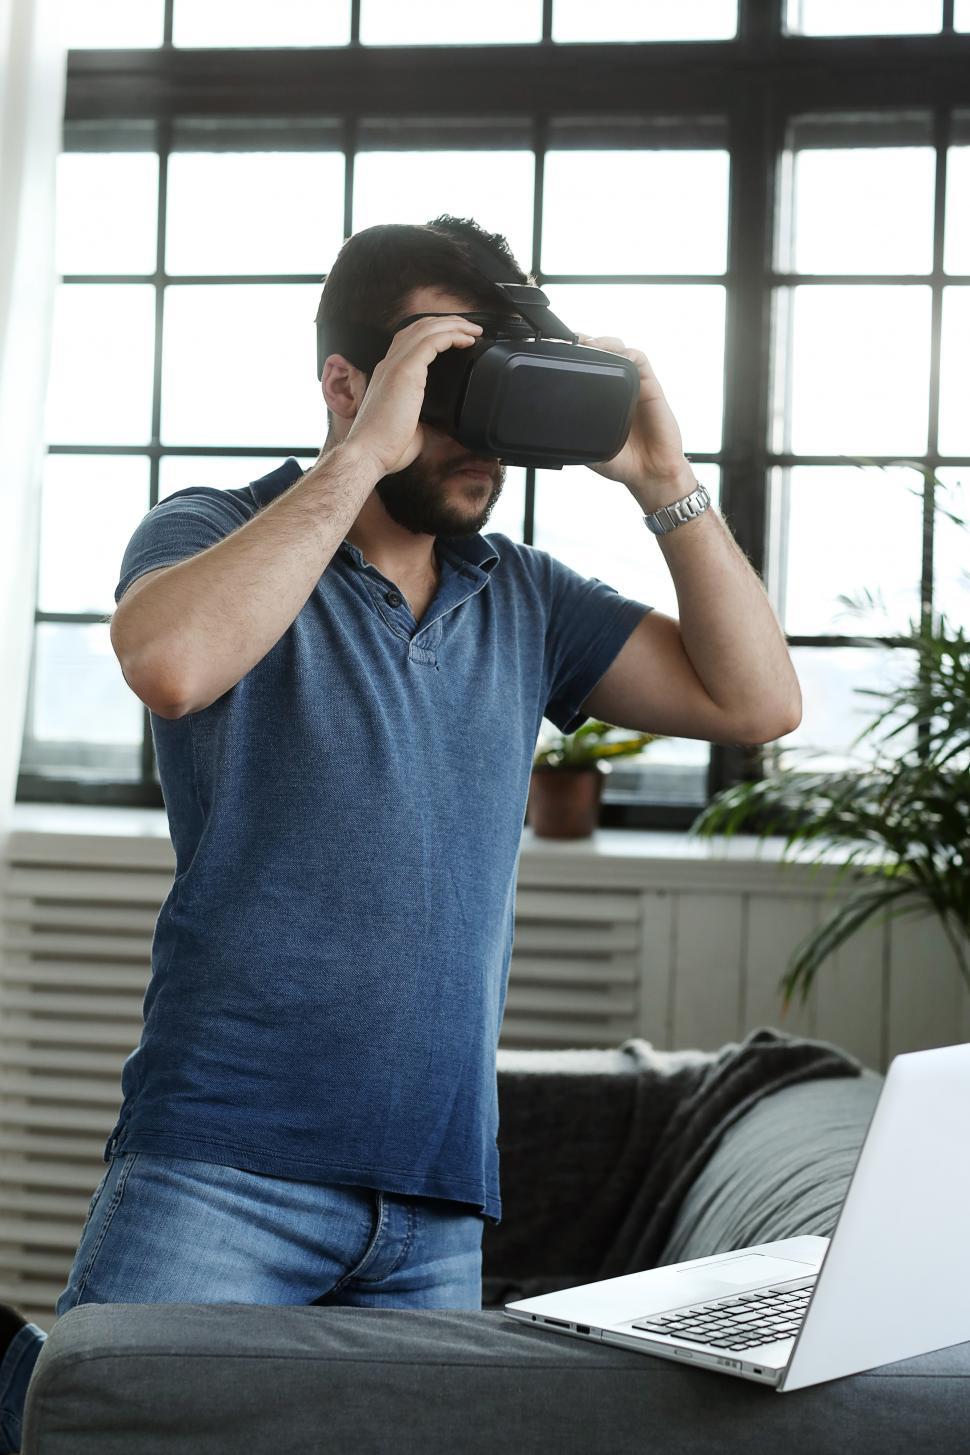 Free Image of Man wearing VR headset 